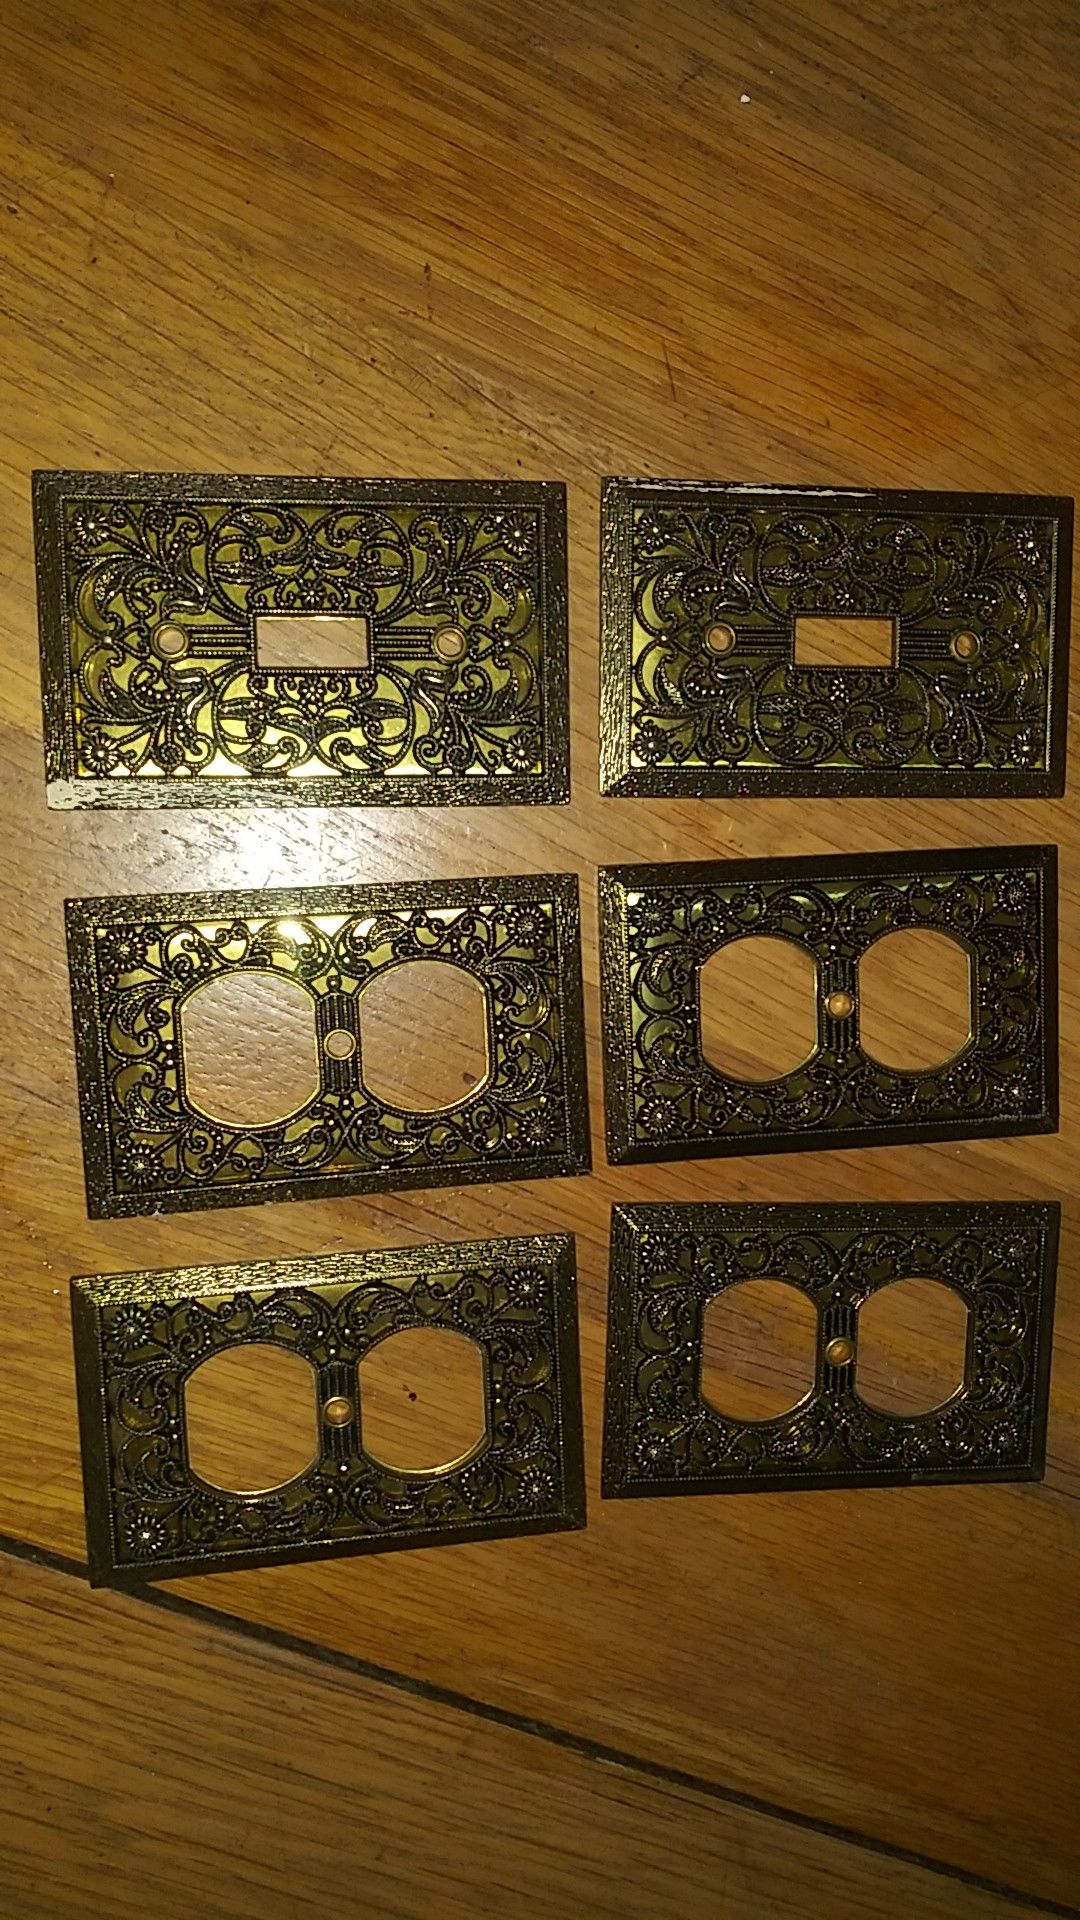 Six light switch plates vintage brass ornate